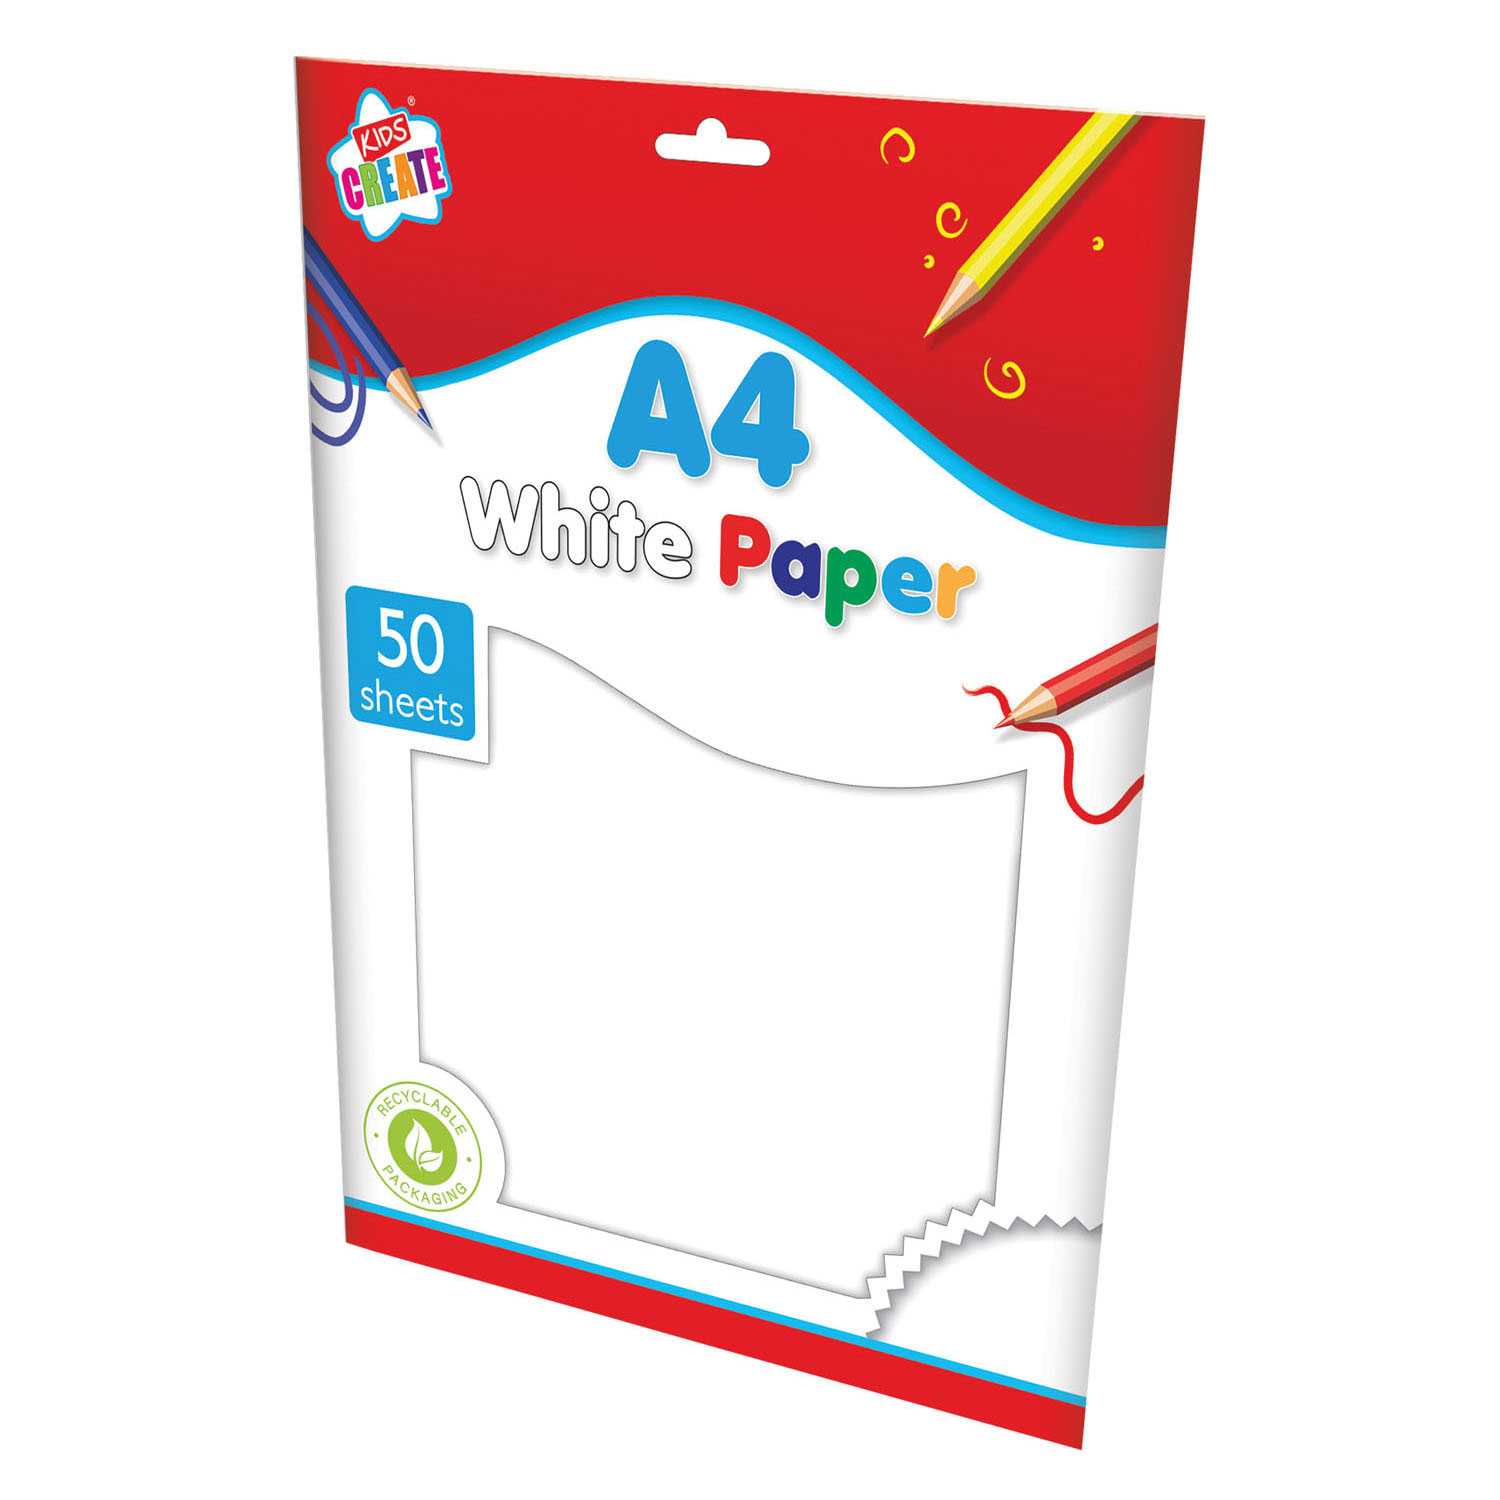 Rauw hemel Bowling Wit Papier A4, 50 Sheets online kopen? | Lobbes Speelgoed